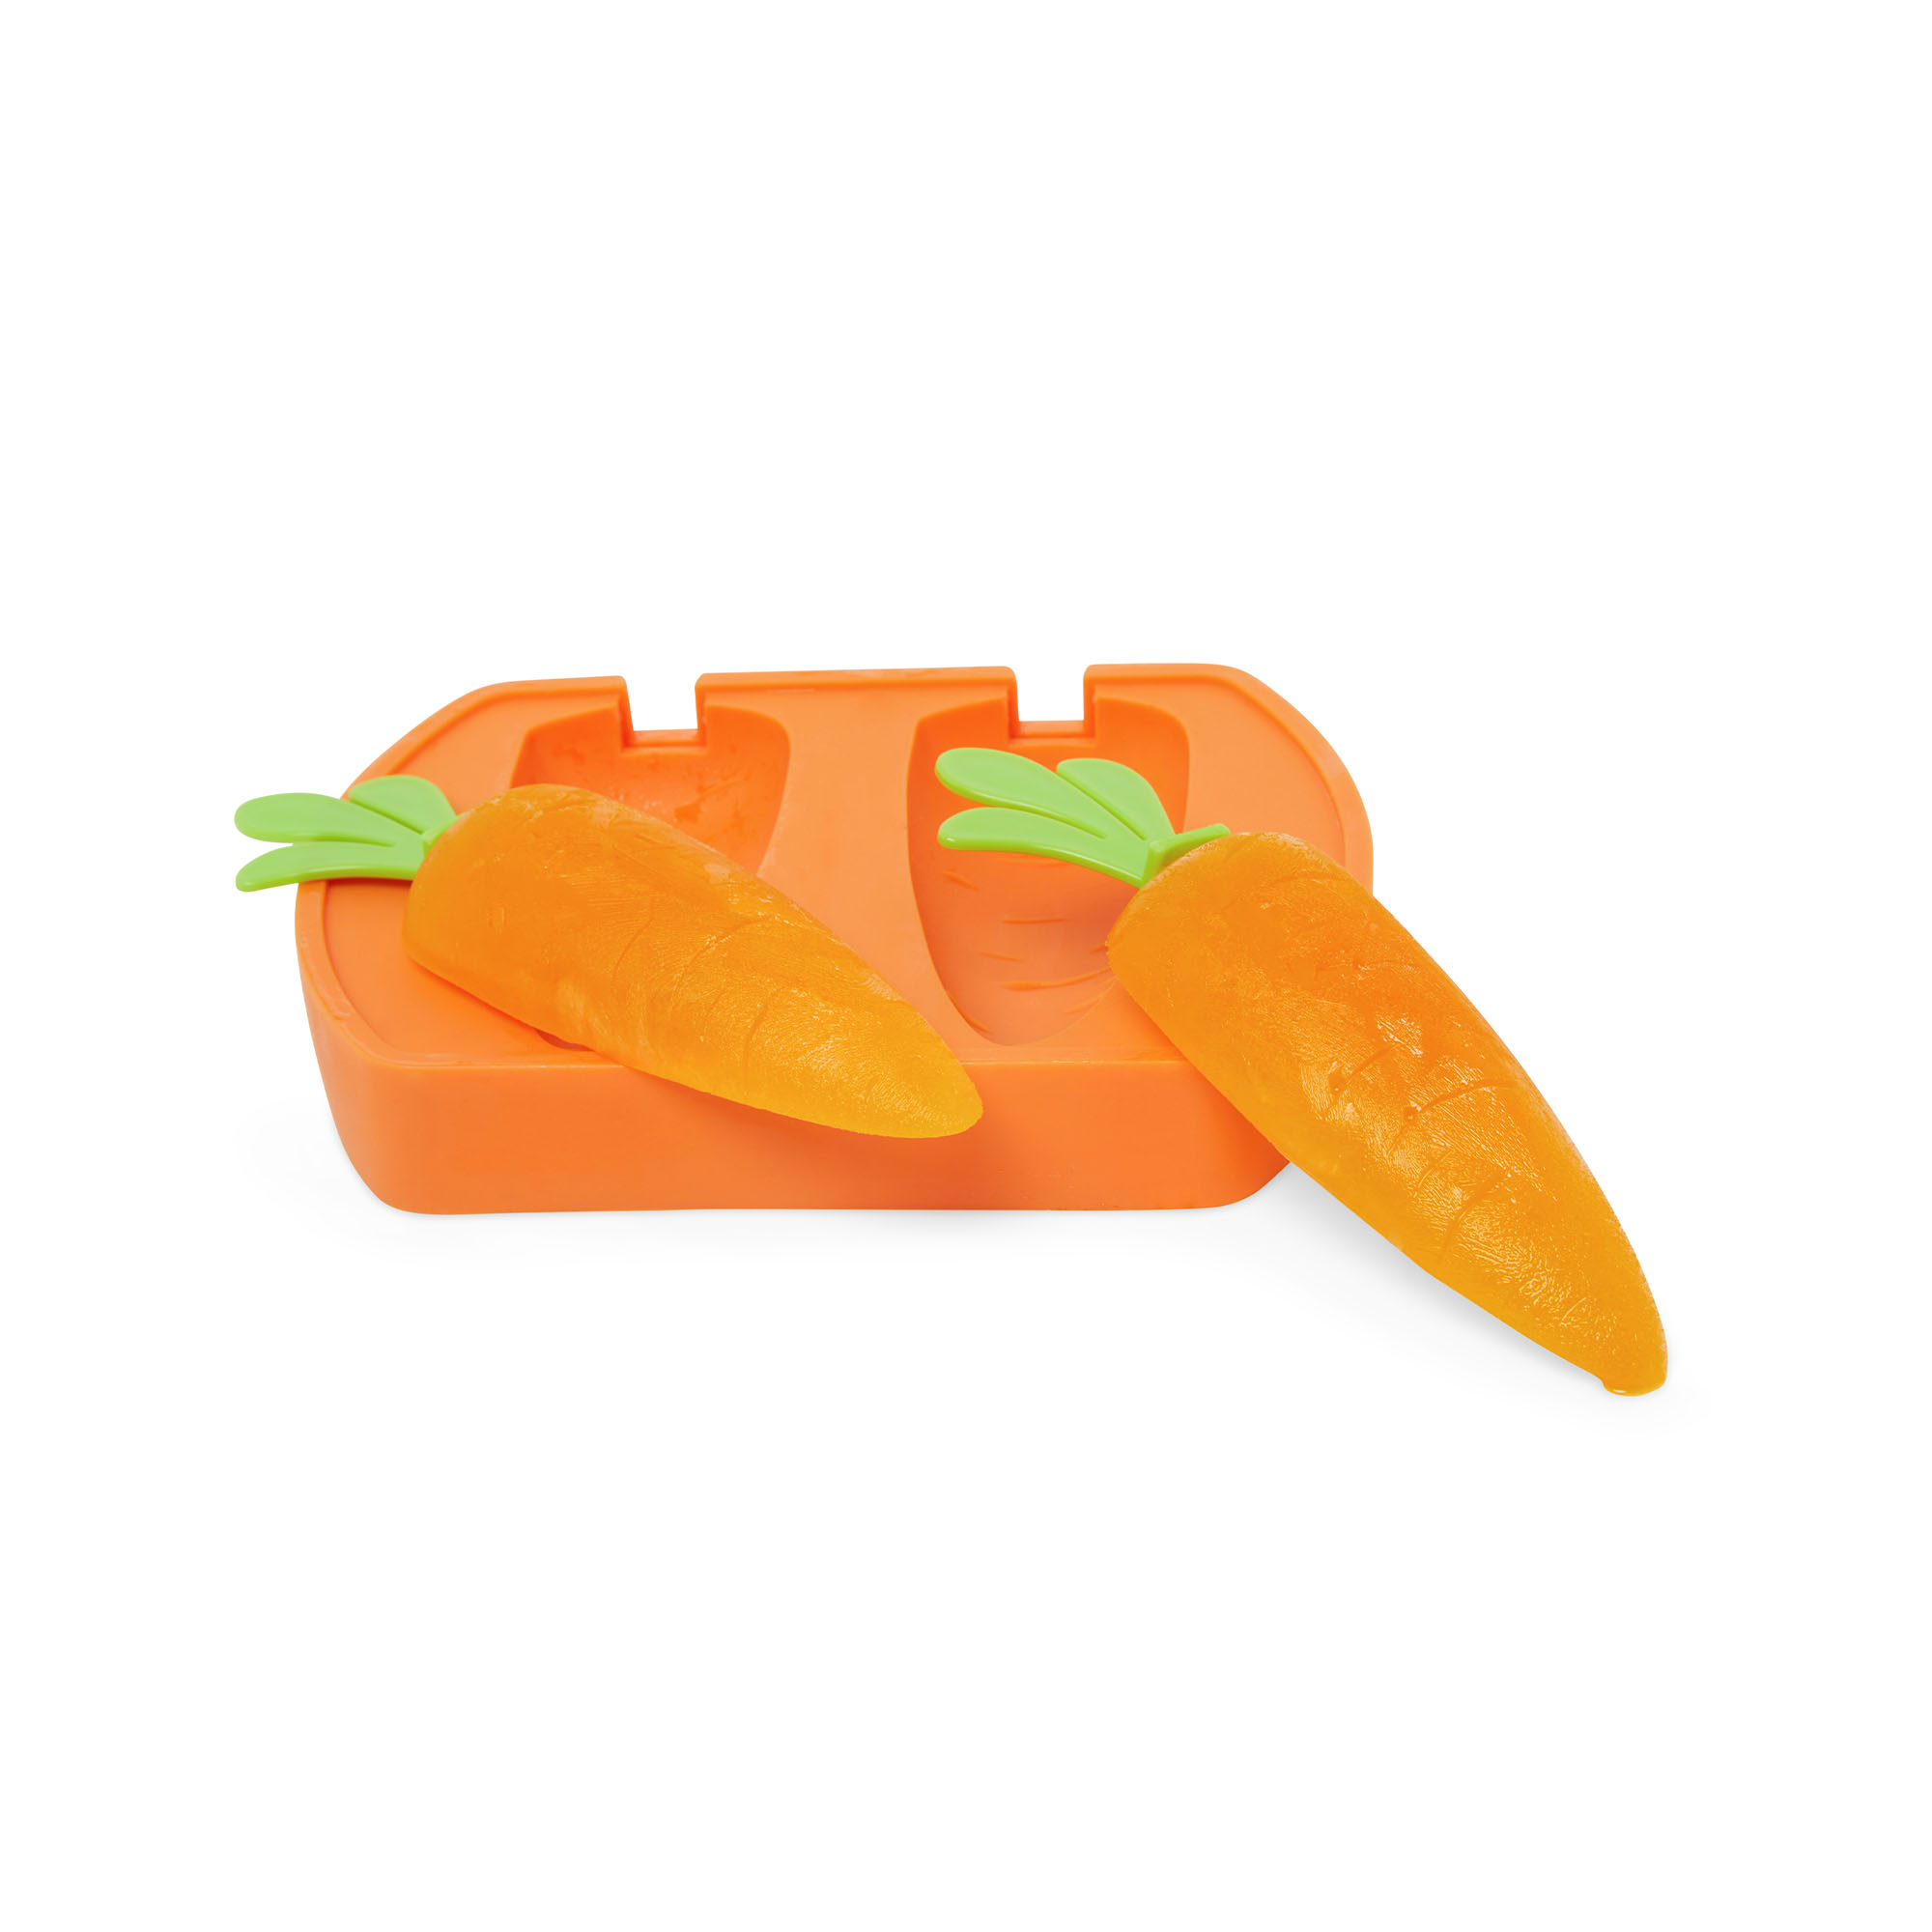 Stampo gelati e ghiaccioli a forma di carota, , large